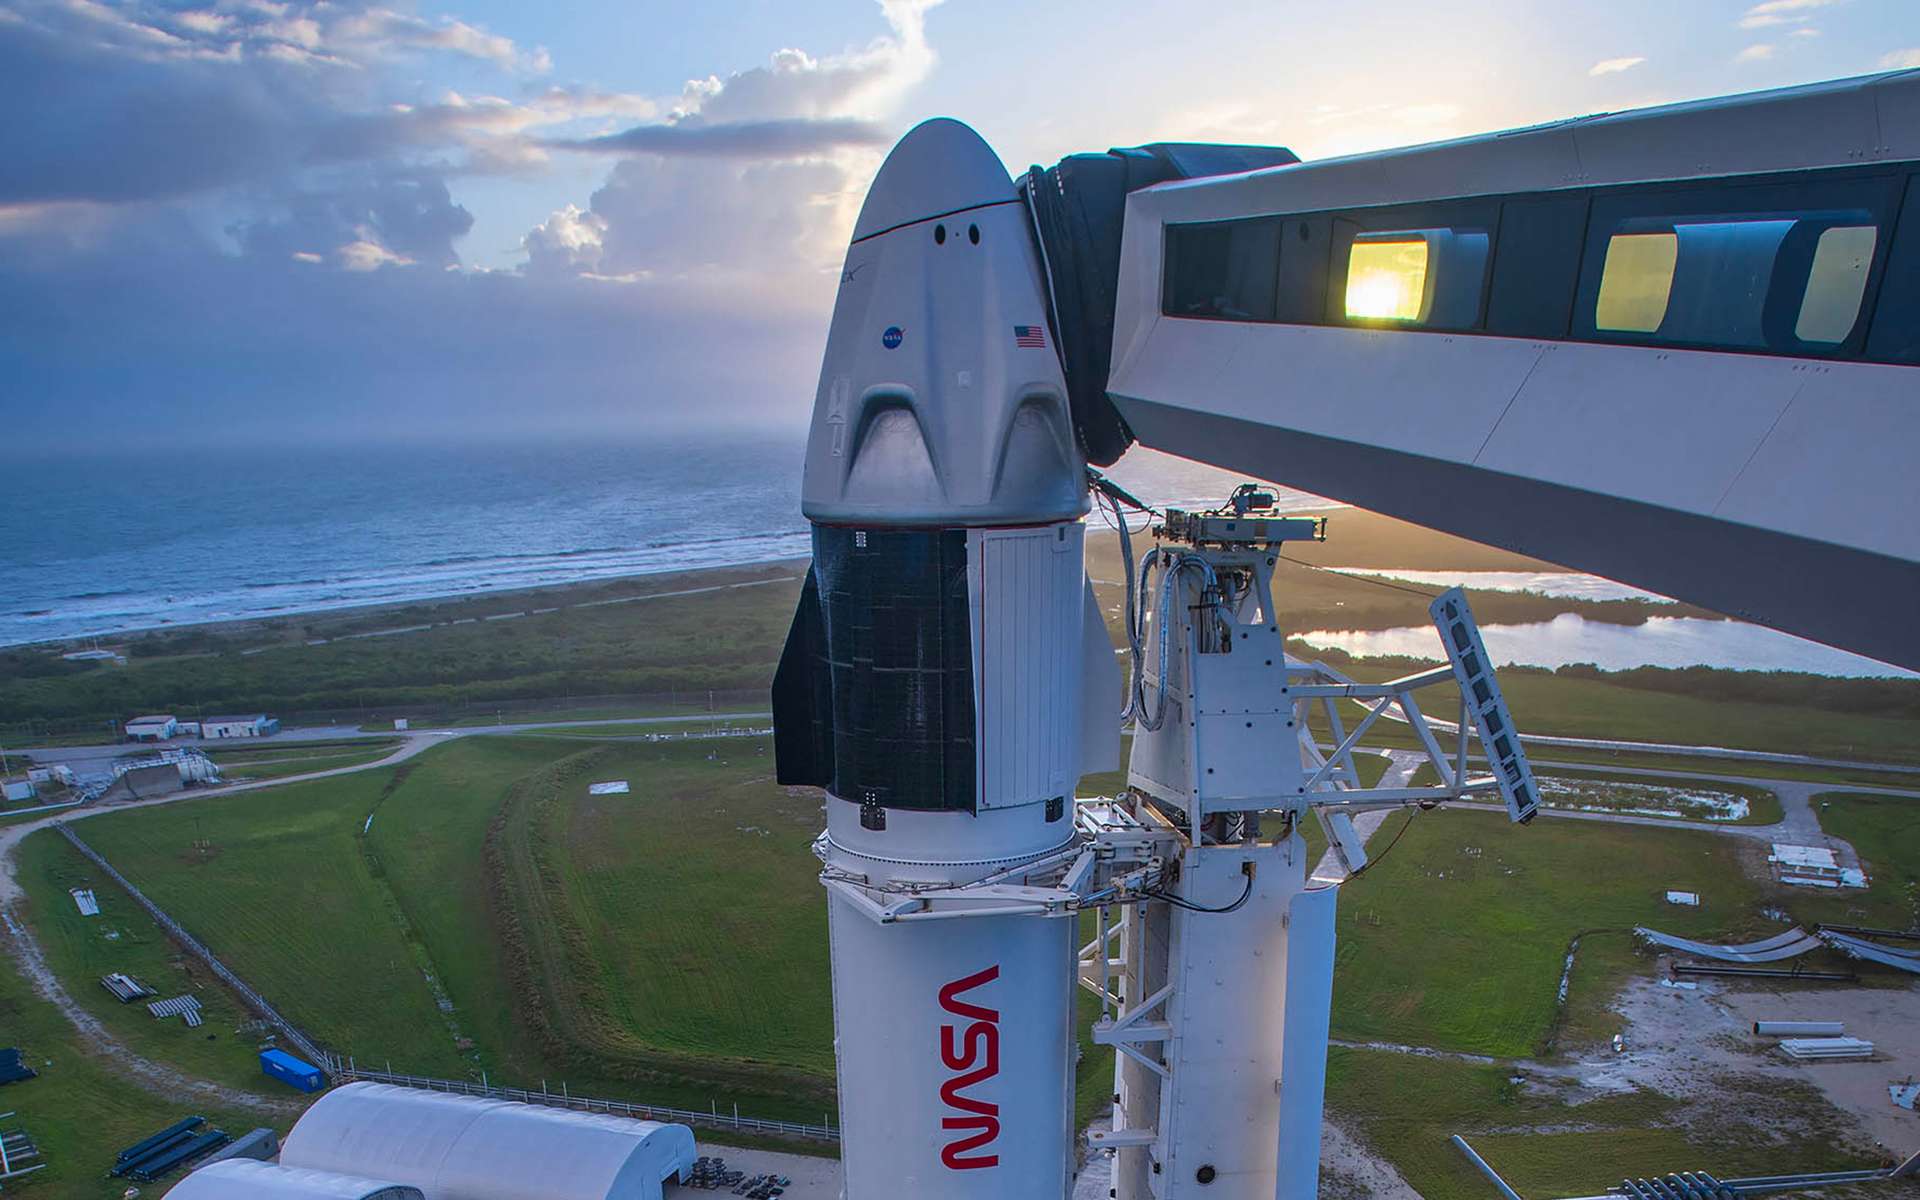 Événement : lancement de Crew-1, ce week-end, premier vol commercial de la Nasa avec SpaceX